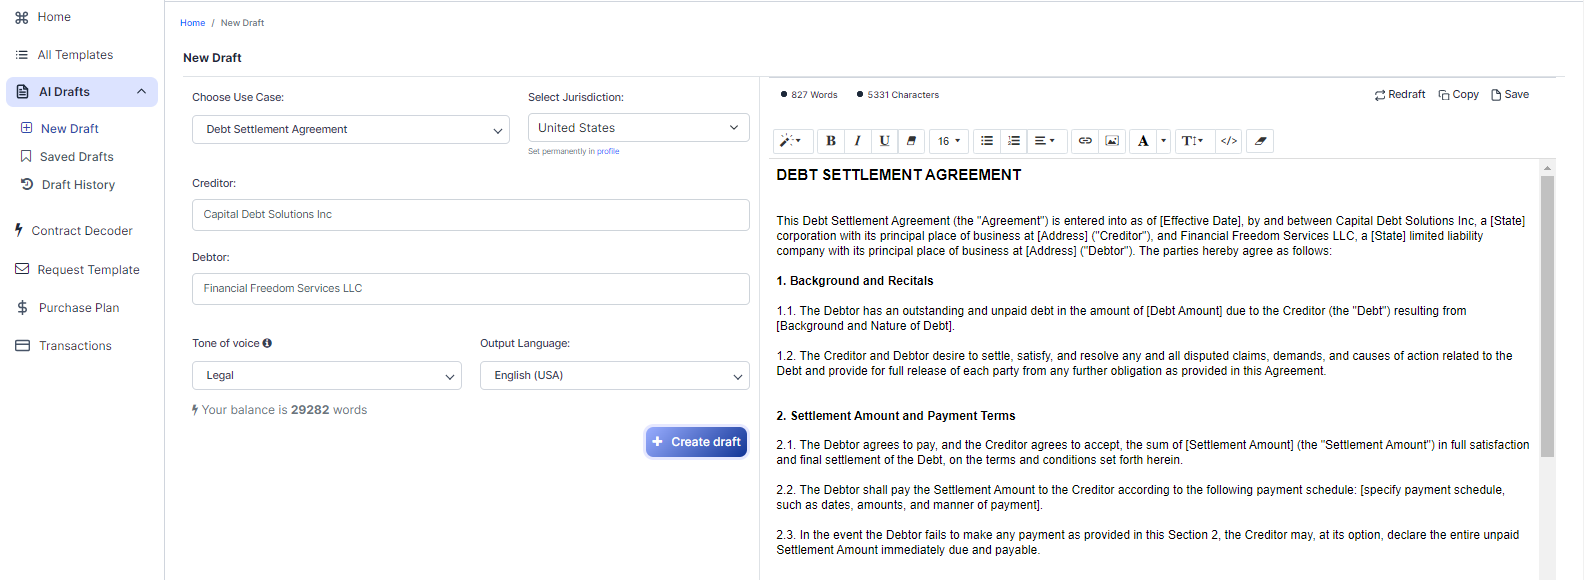 Debt Settlement Agreement template